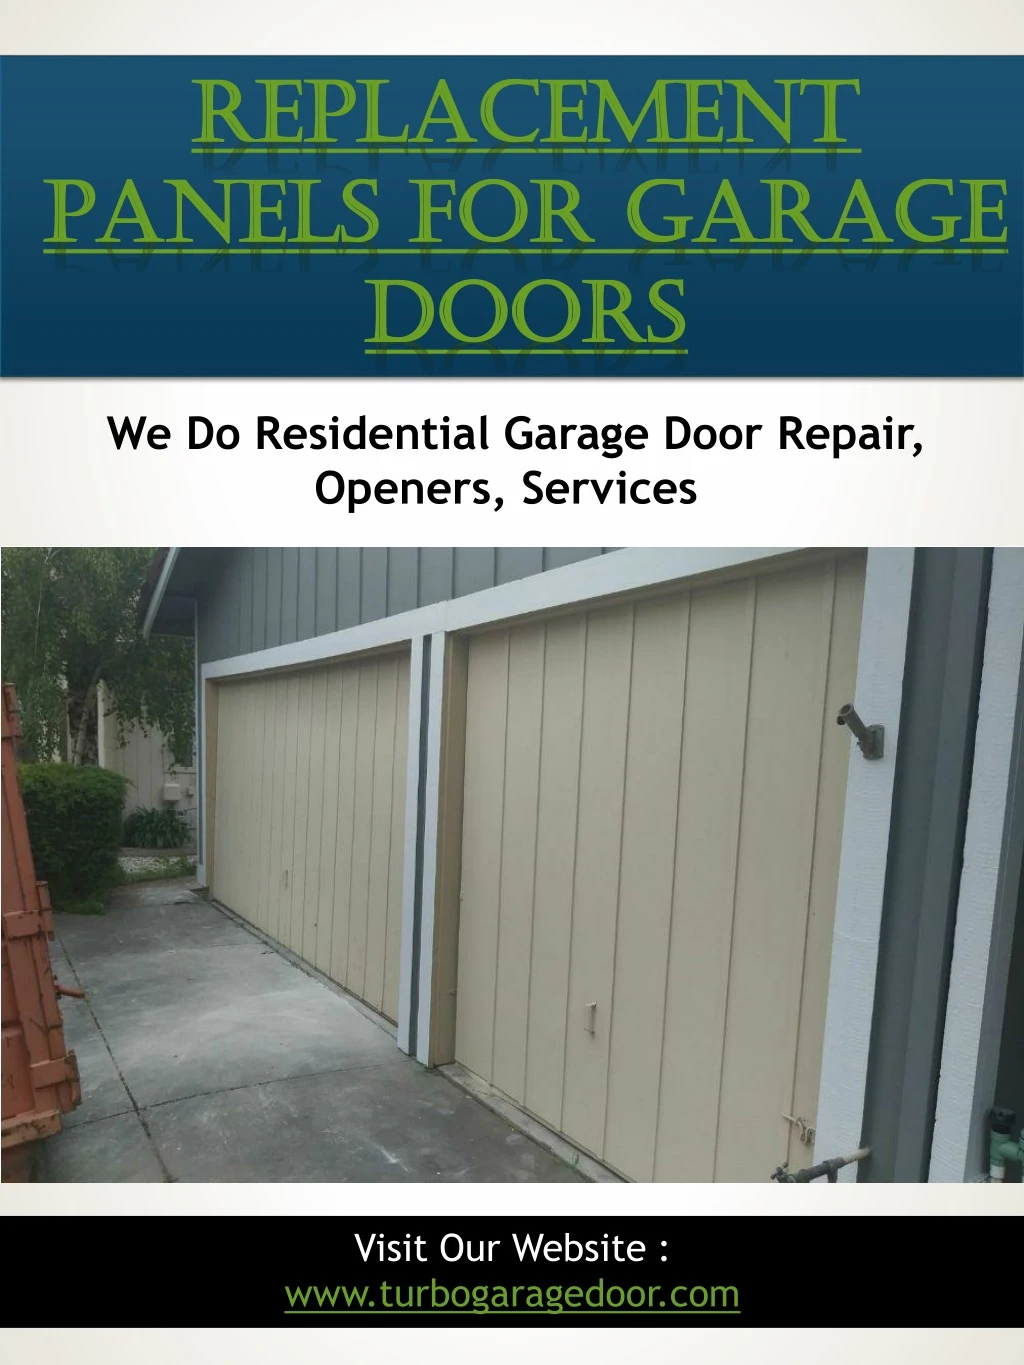 replacement panels for garage doors